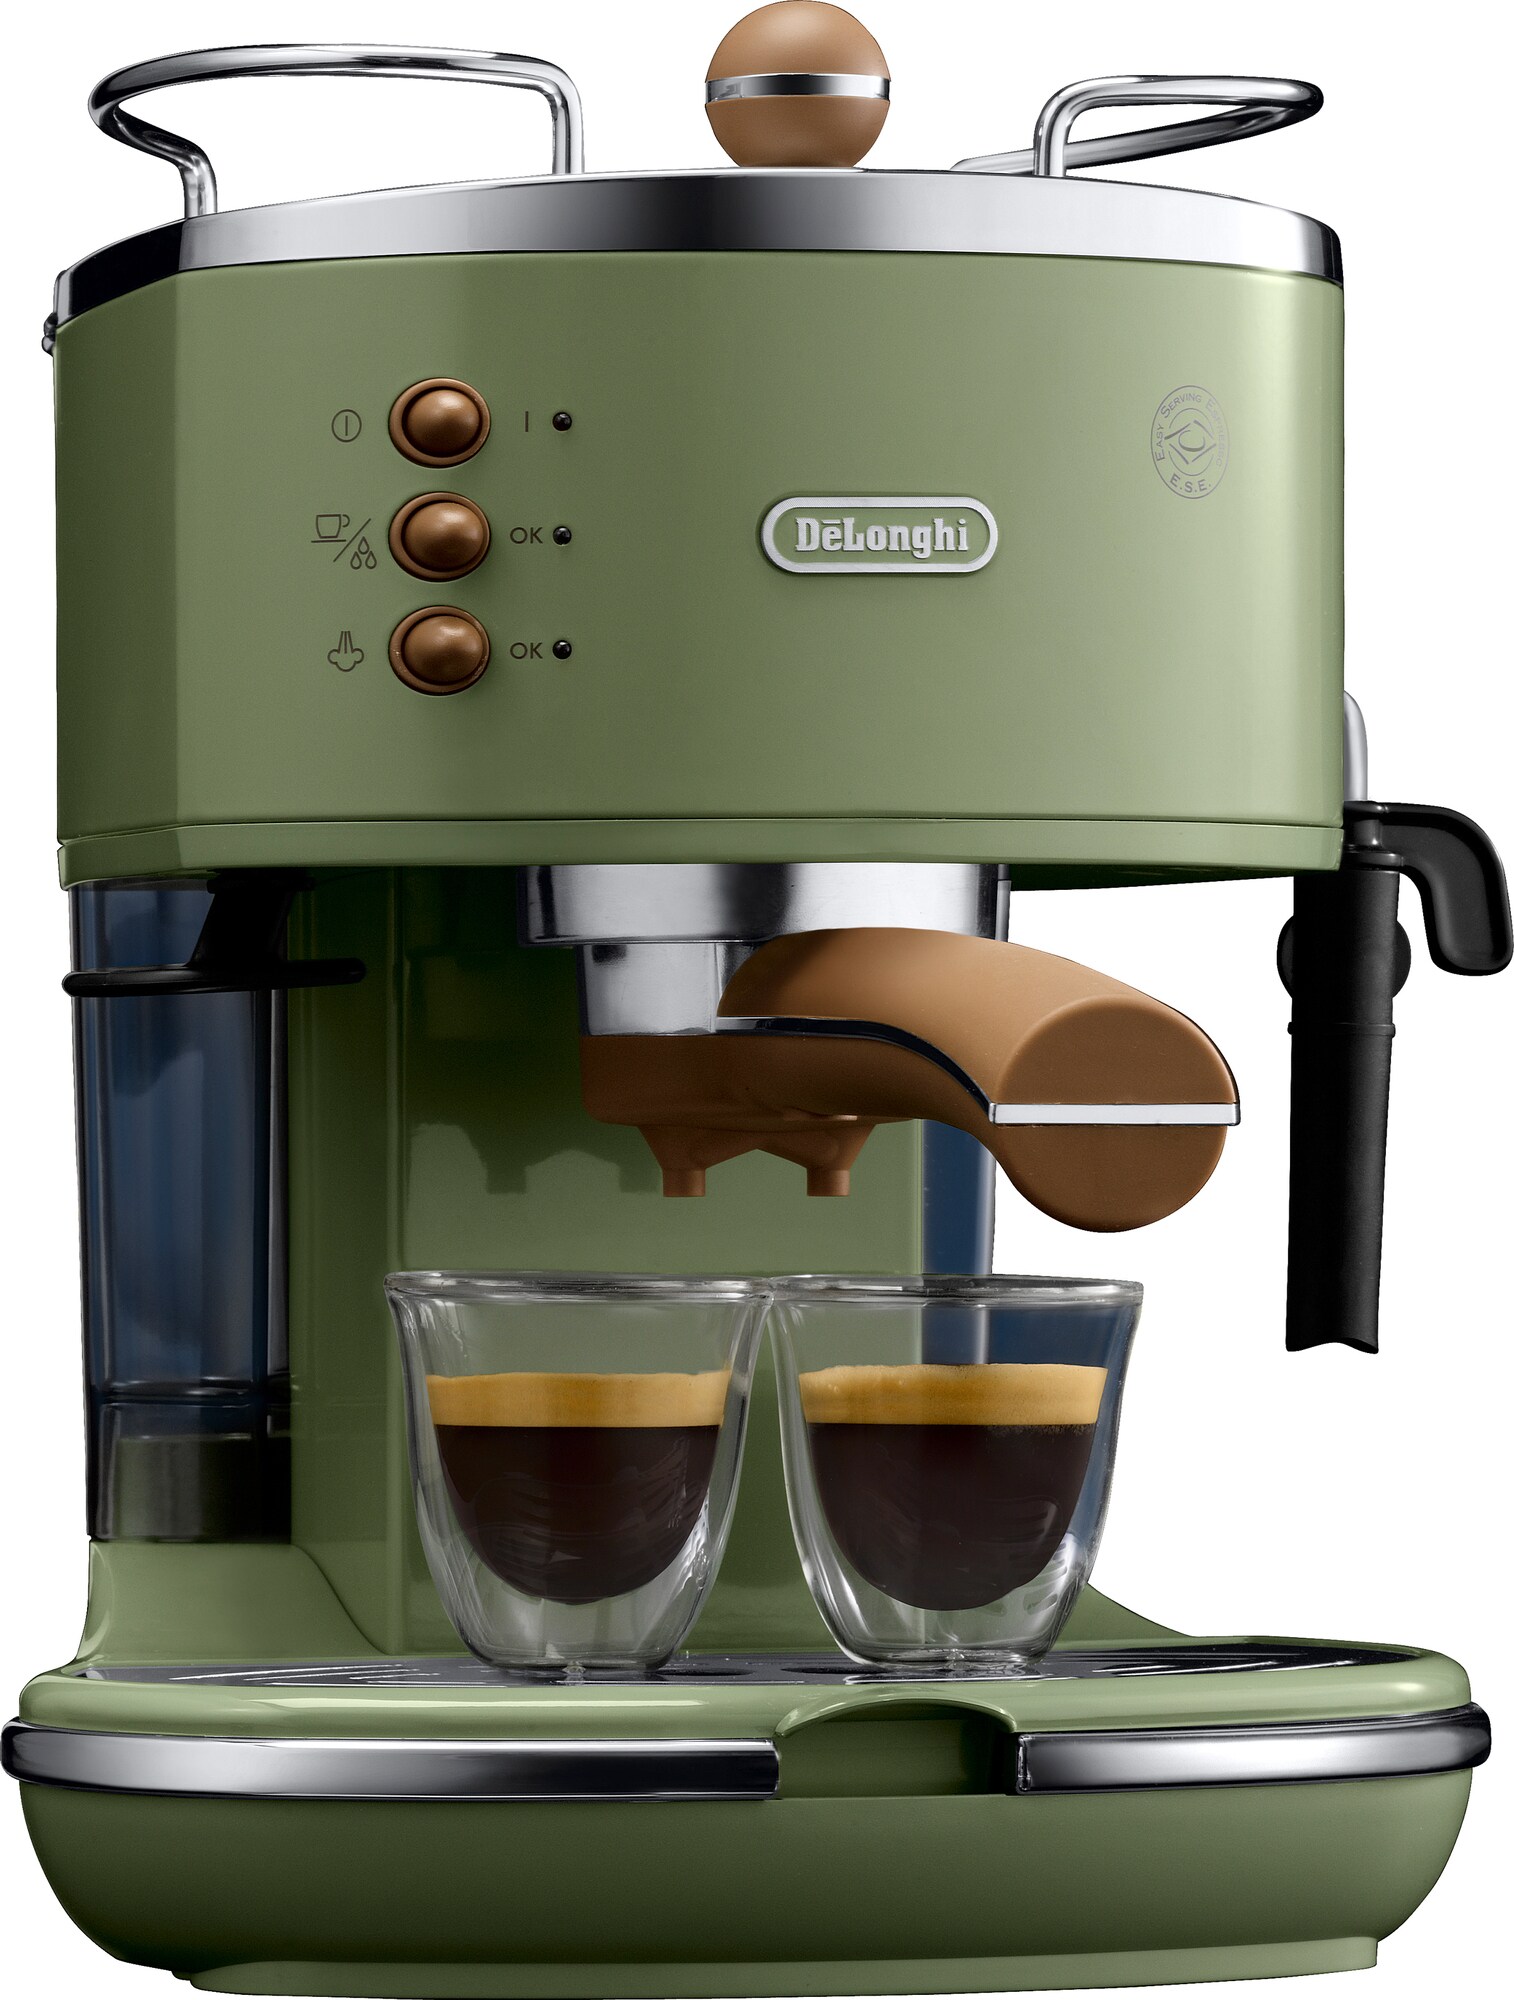 DeLonghi Icona kaffemaskin ECOV311GR (grønn) - Elkjøp